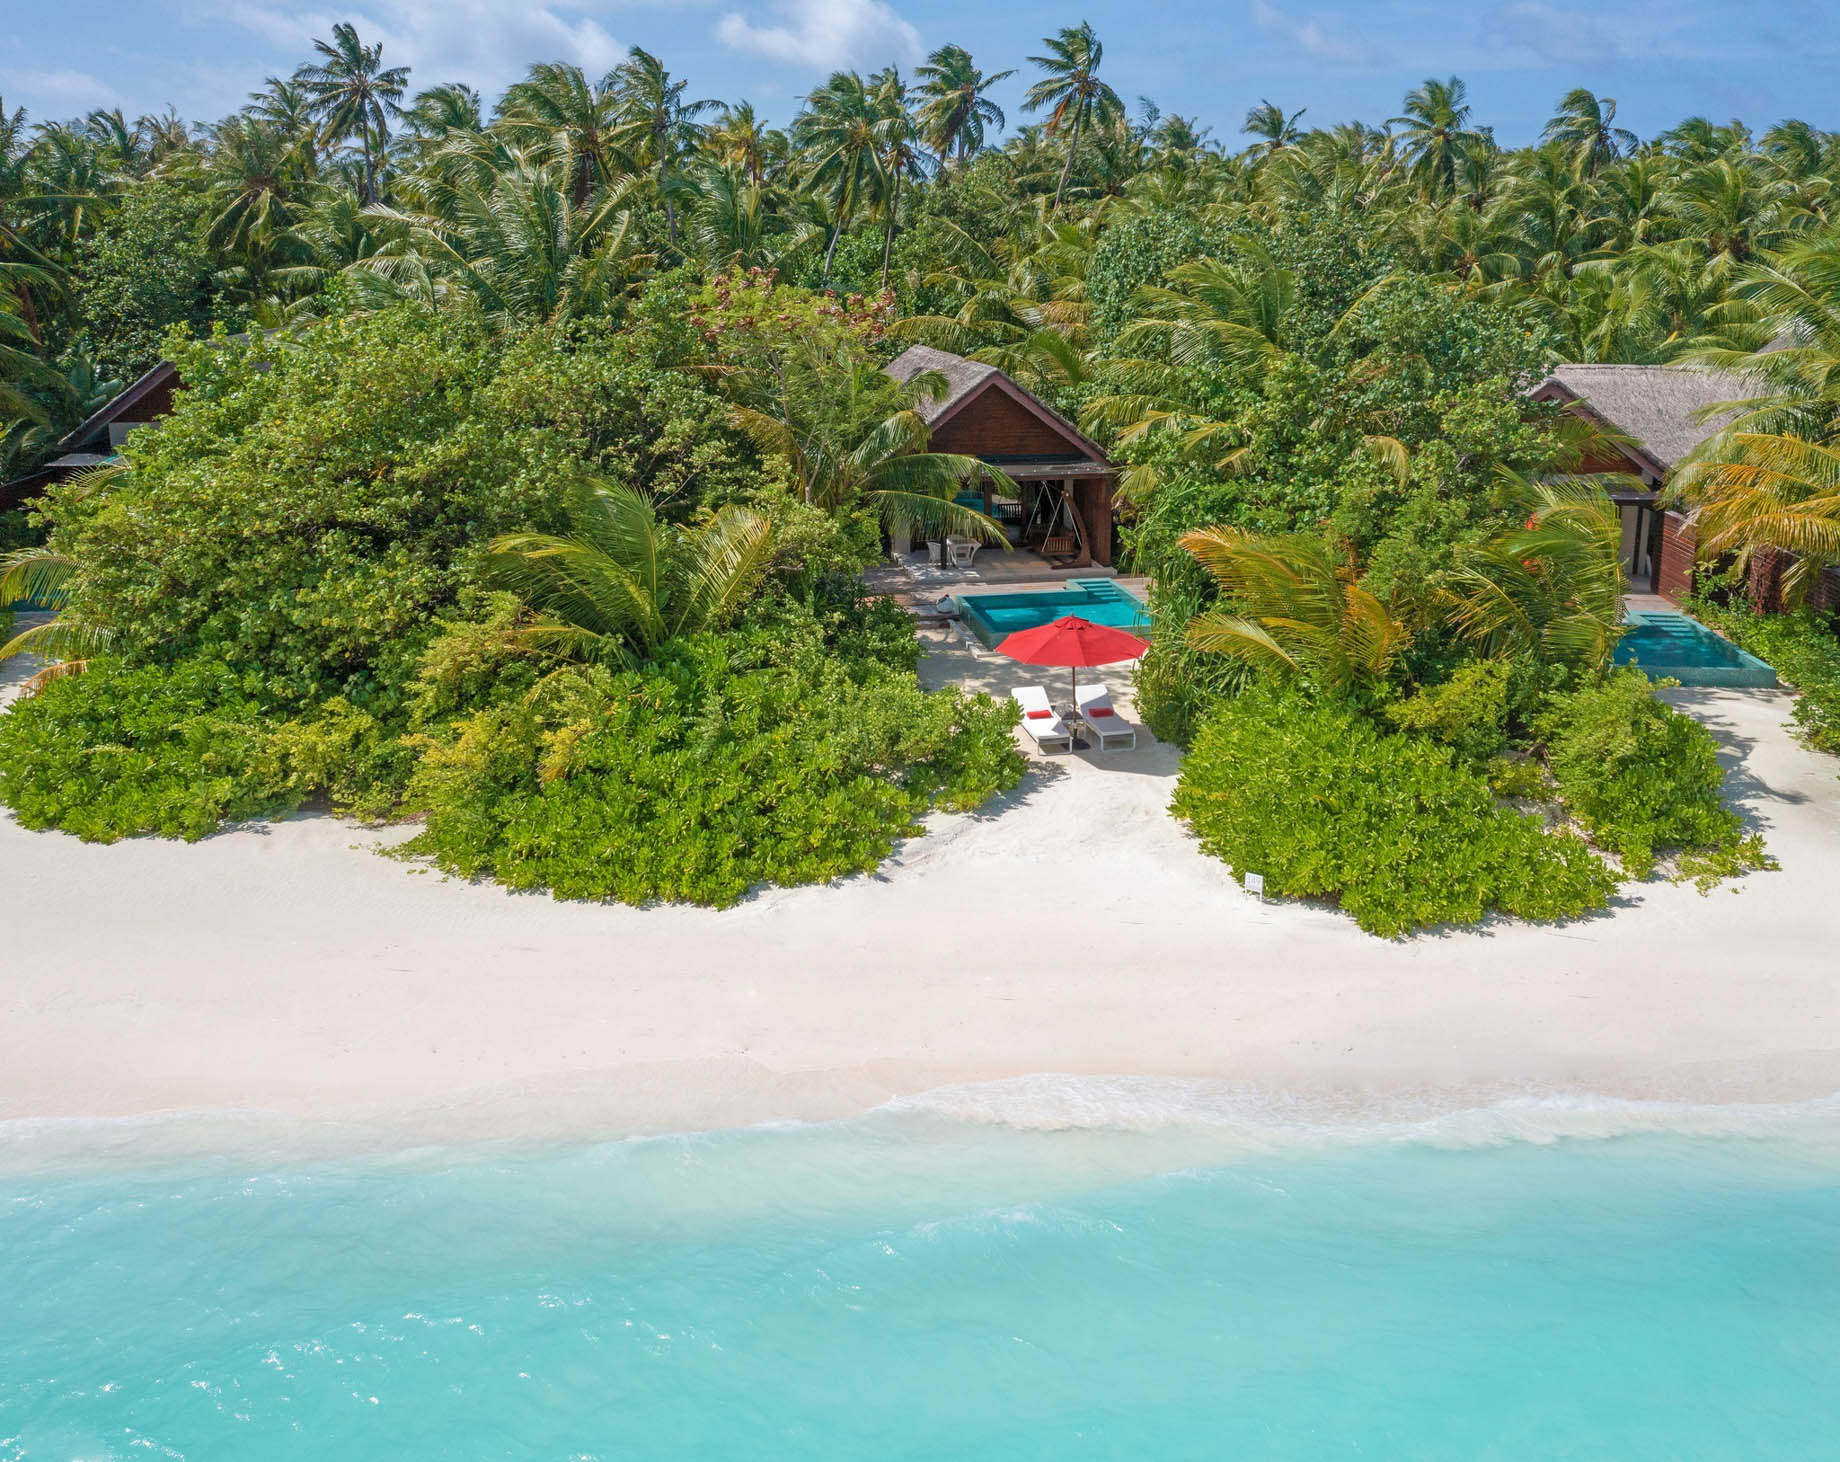 Niyama Private Islands Maldives Resort – Dhaalu Atoll, Maldives – Beach Villa Aerial View